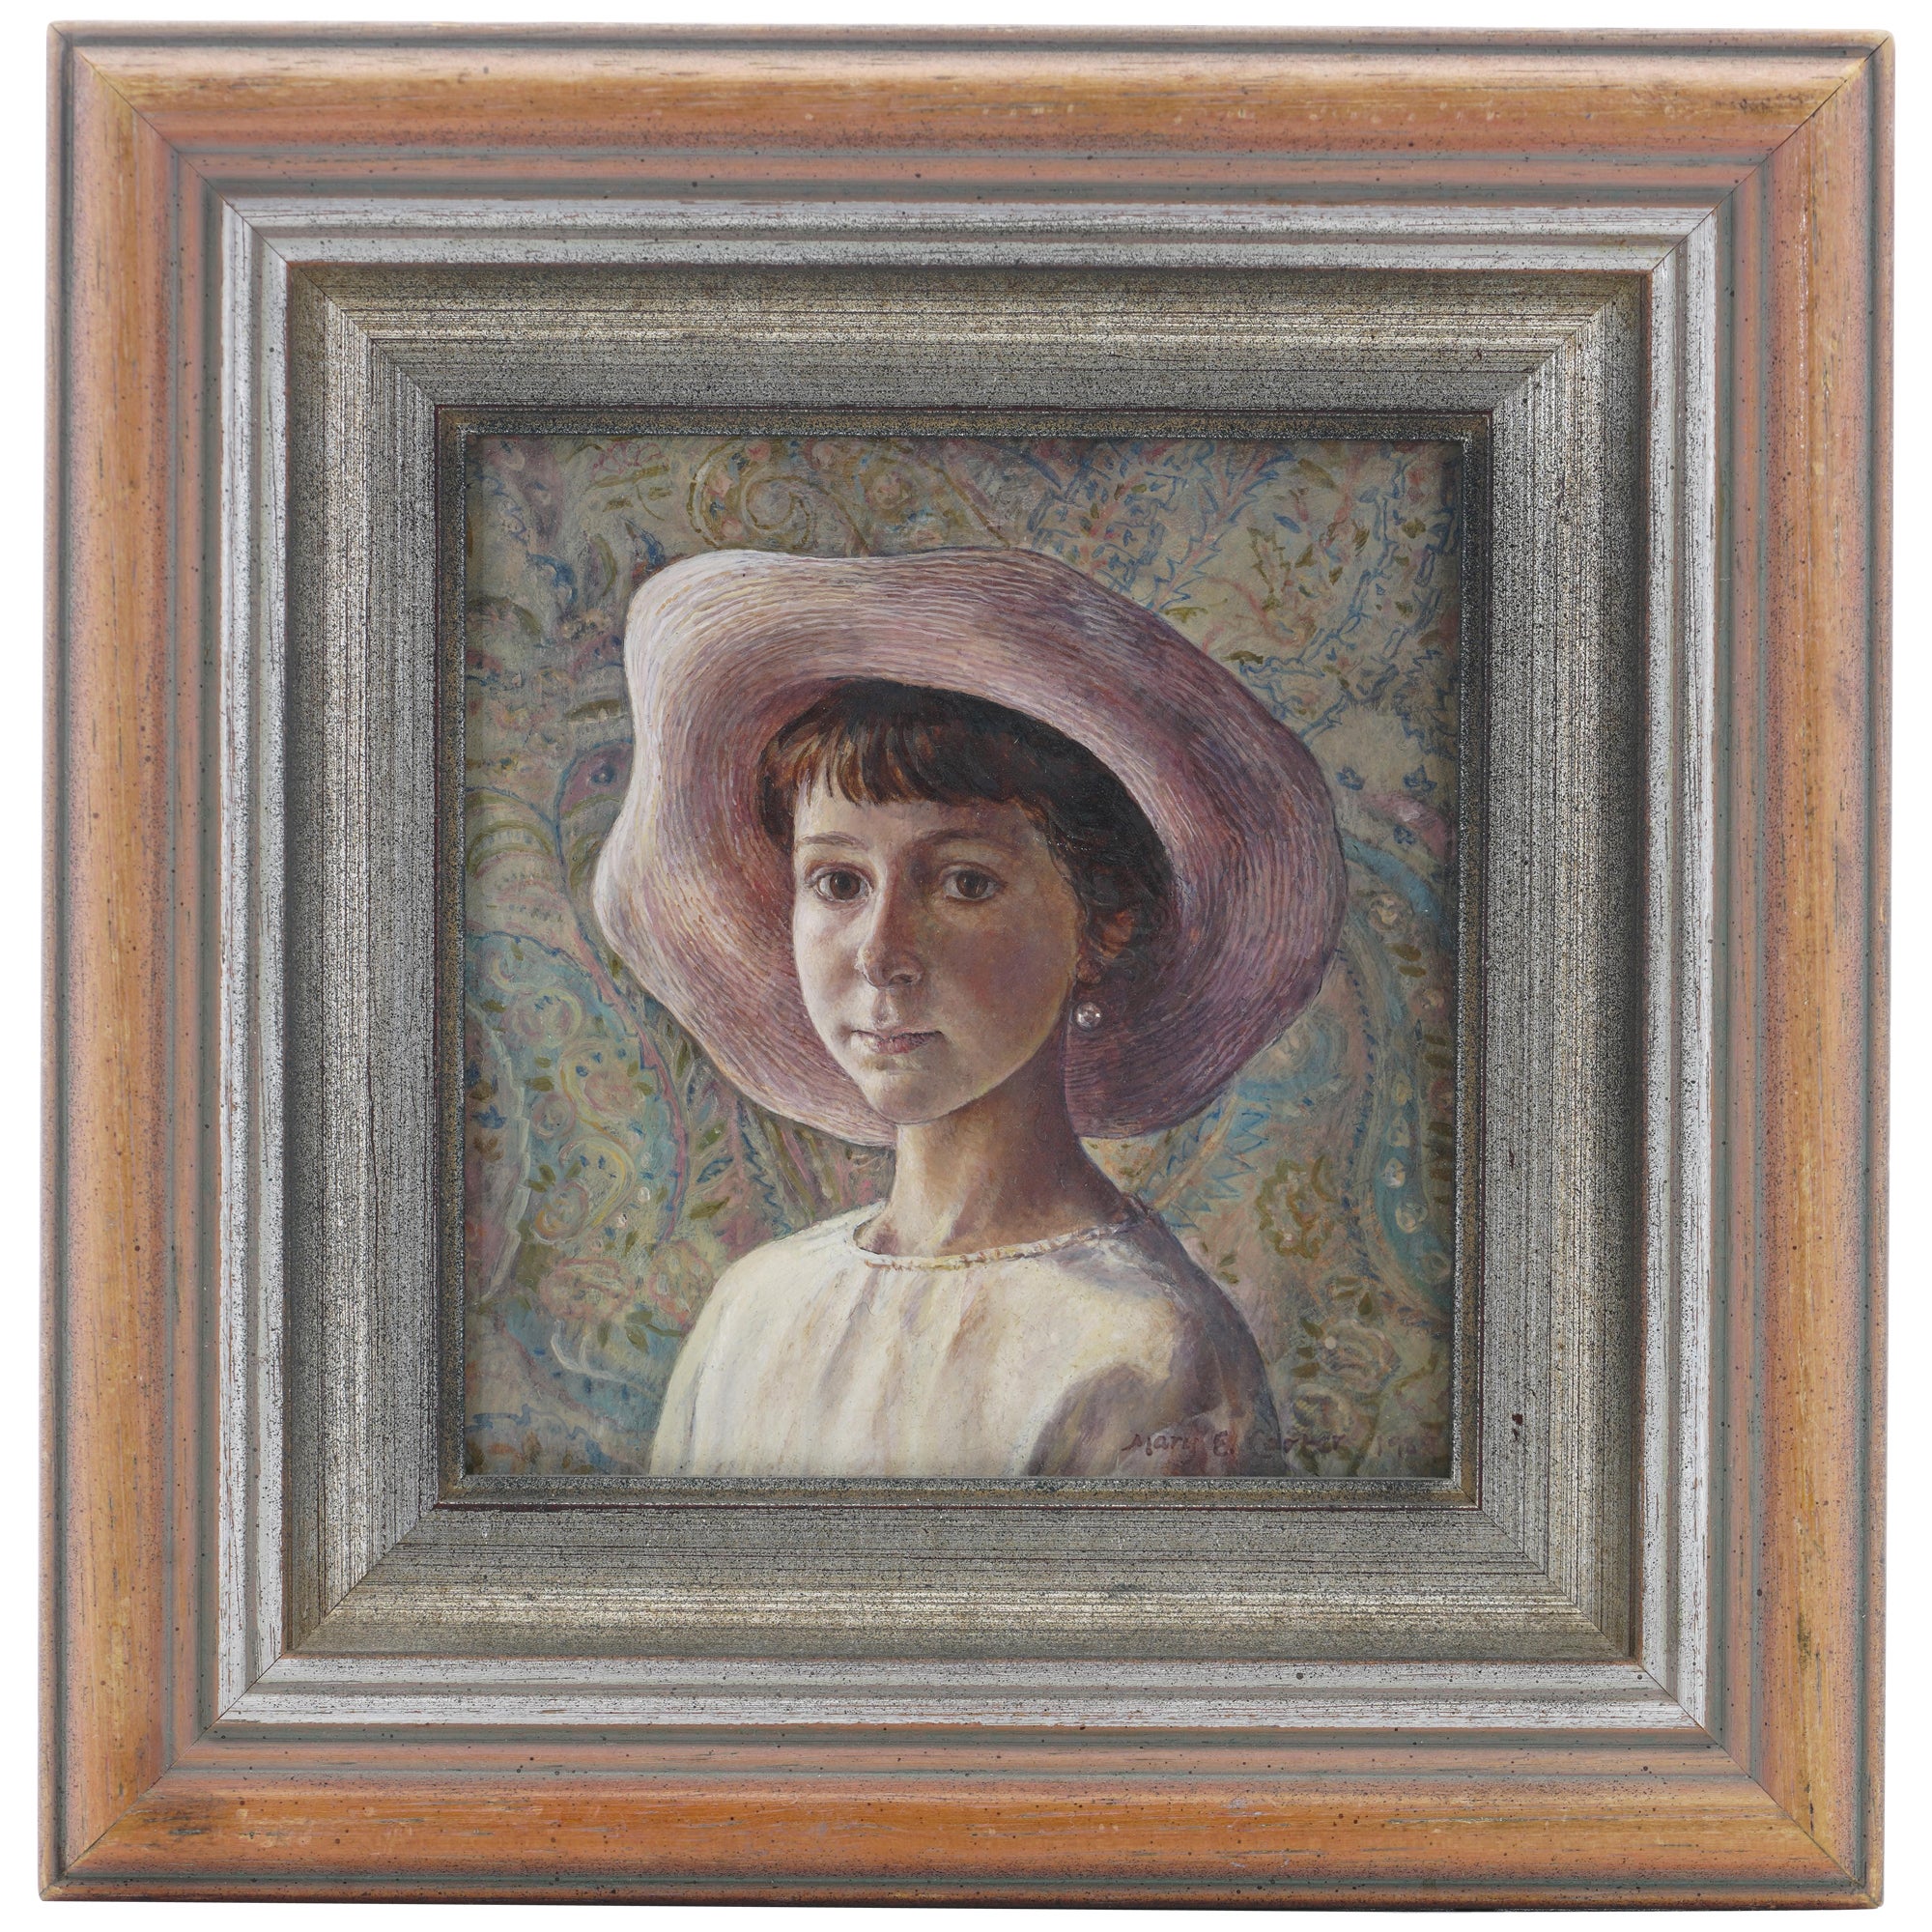 Mary E. Carter, Ölgemälde auf Leinwand, Gemälde eines Mädchens mit Hut